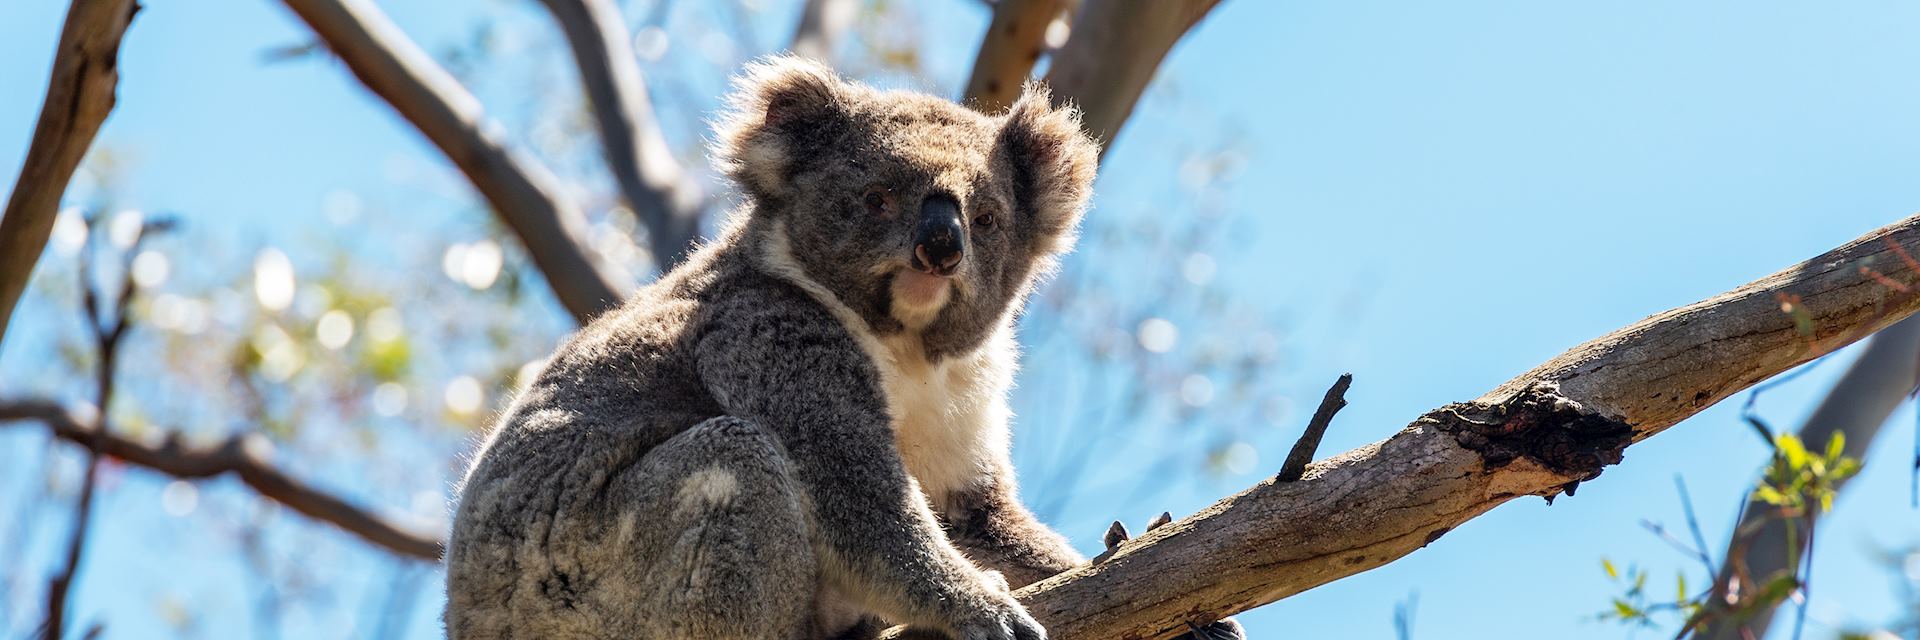 Koala, Phillip Island, Victoria